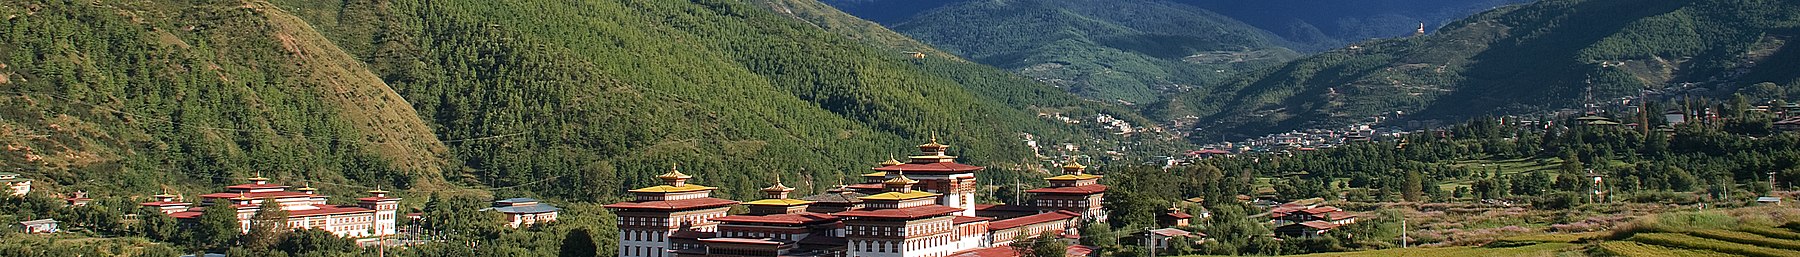 Thimphu Wikivoyage banner.jpg